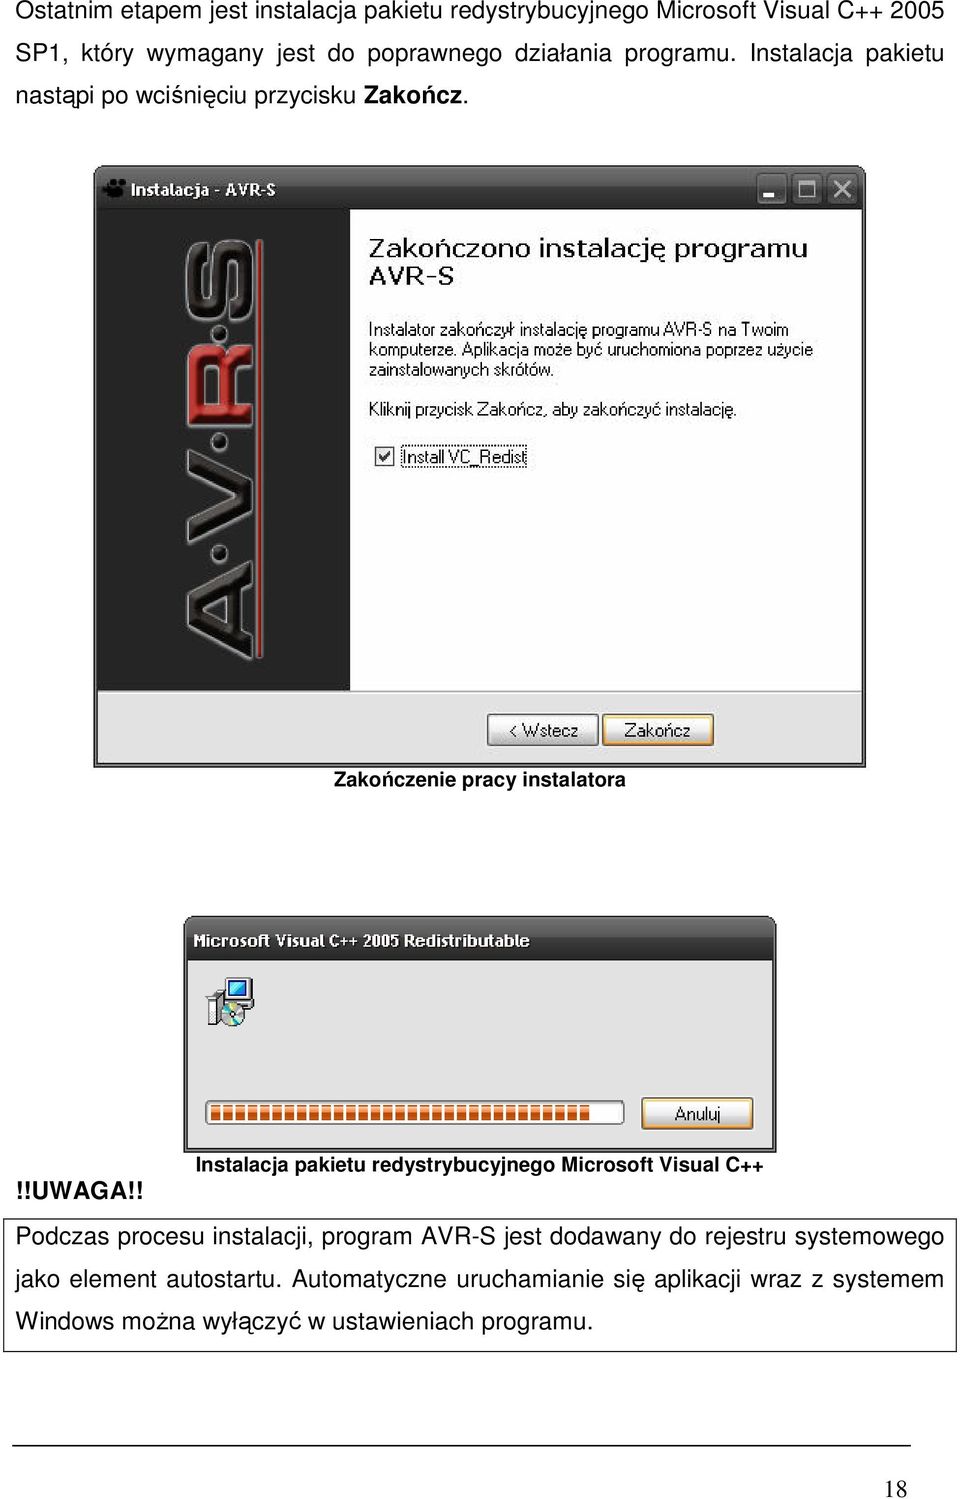 ! Instalacja pakietu redystrybucyjnego Microsoft Visual C++ Podczas procesu instalacji, program AVR-S jest dodawany do rejestru